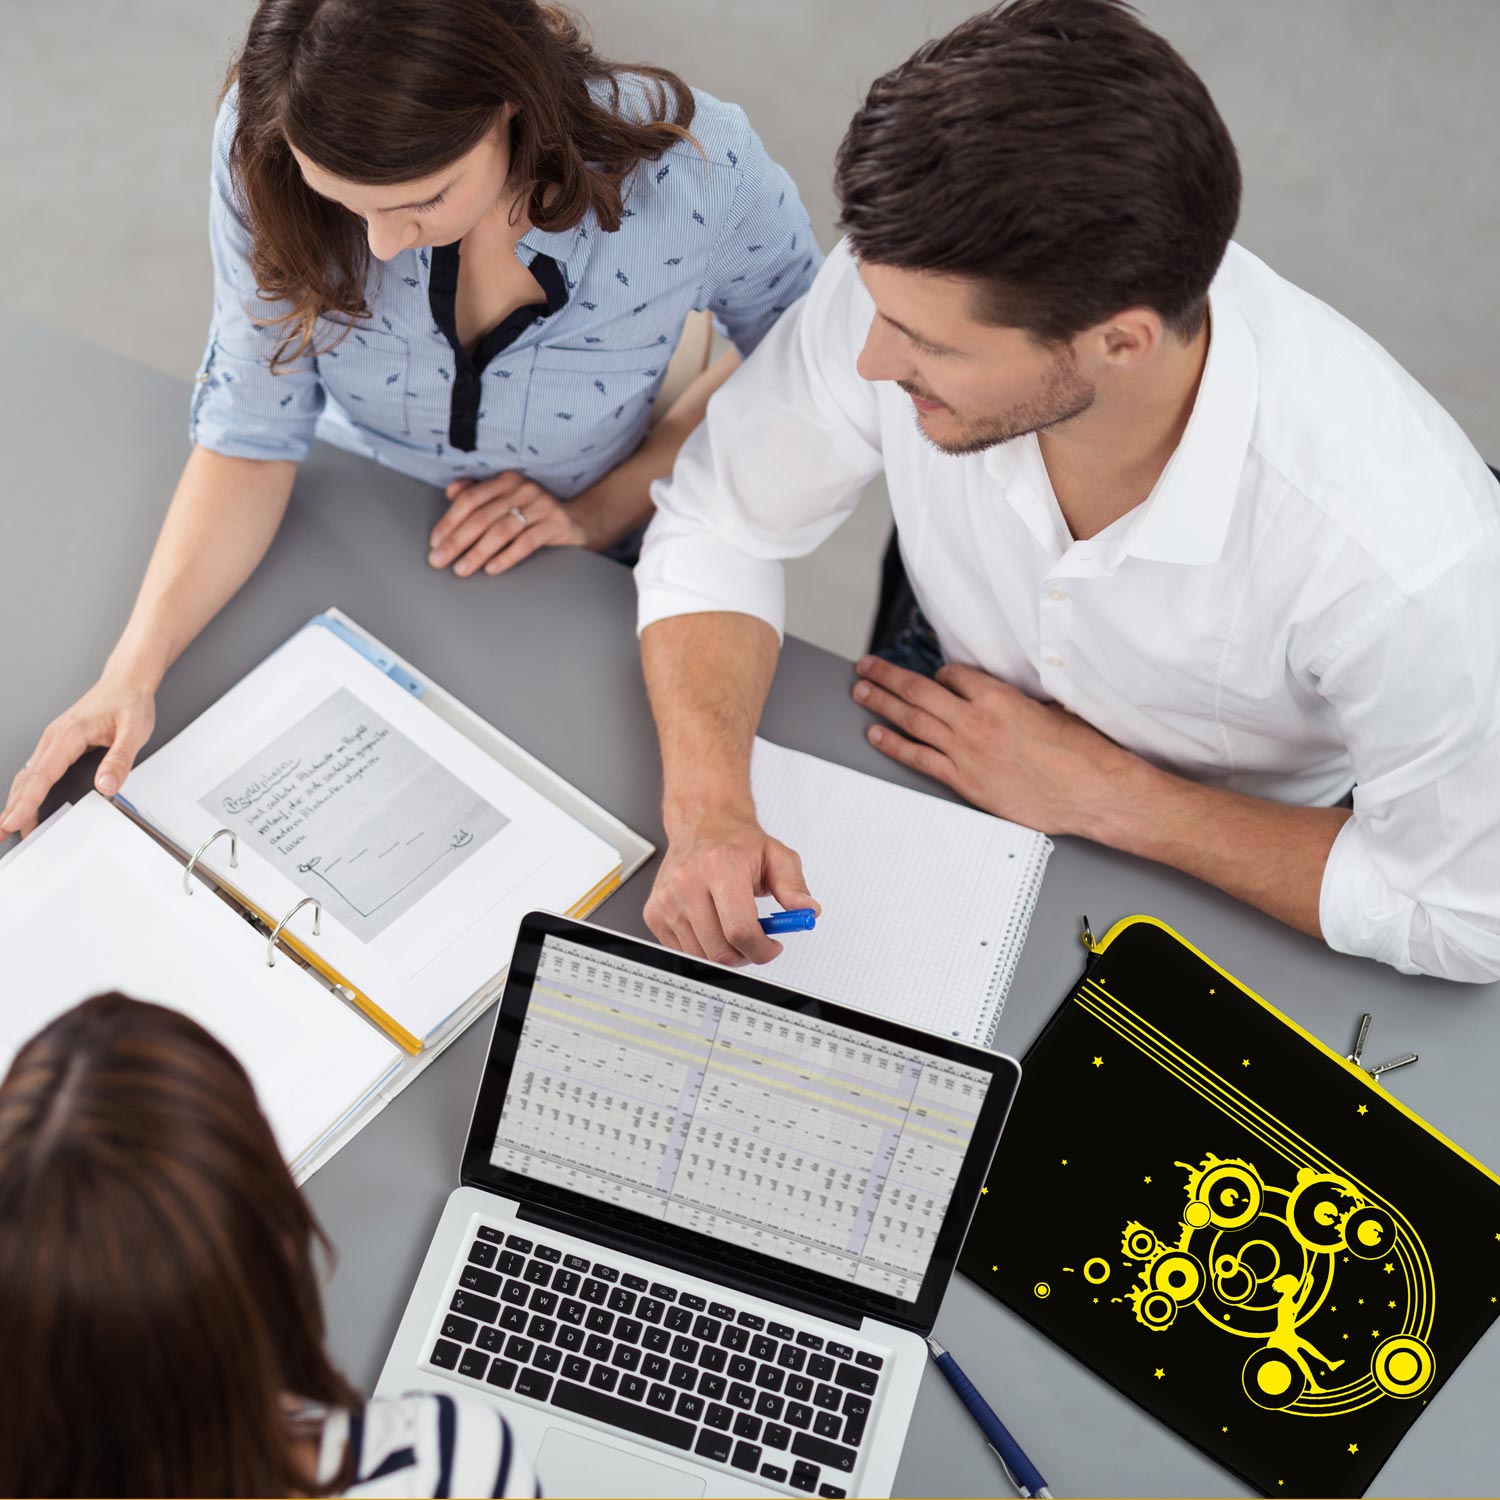 LS161 Swing Designer Schutzhülle für Laptop in schwarz-gelb als Business-Zubehör im Büro, bei Kunden und auf Dienstreisen